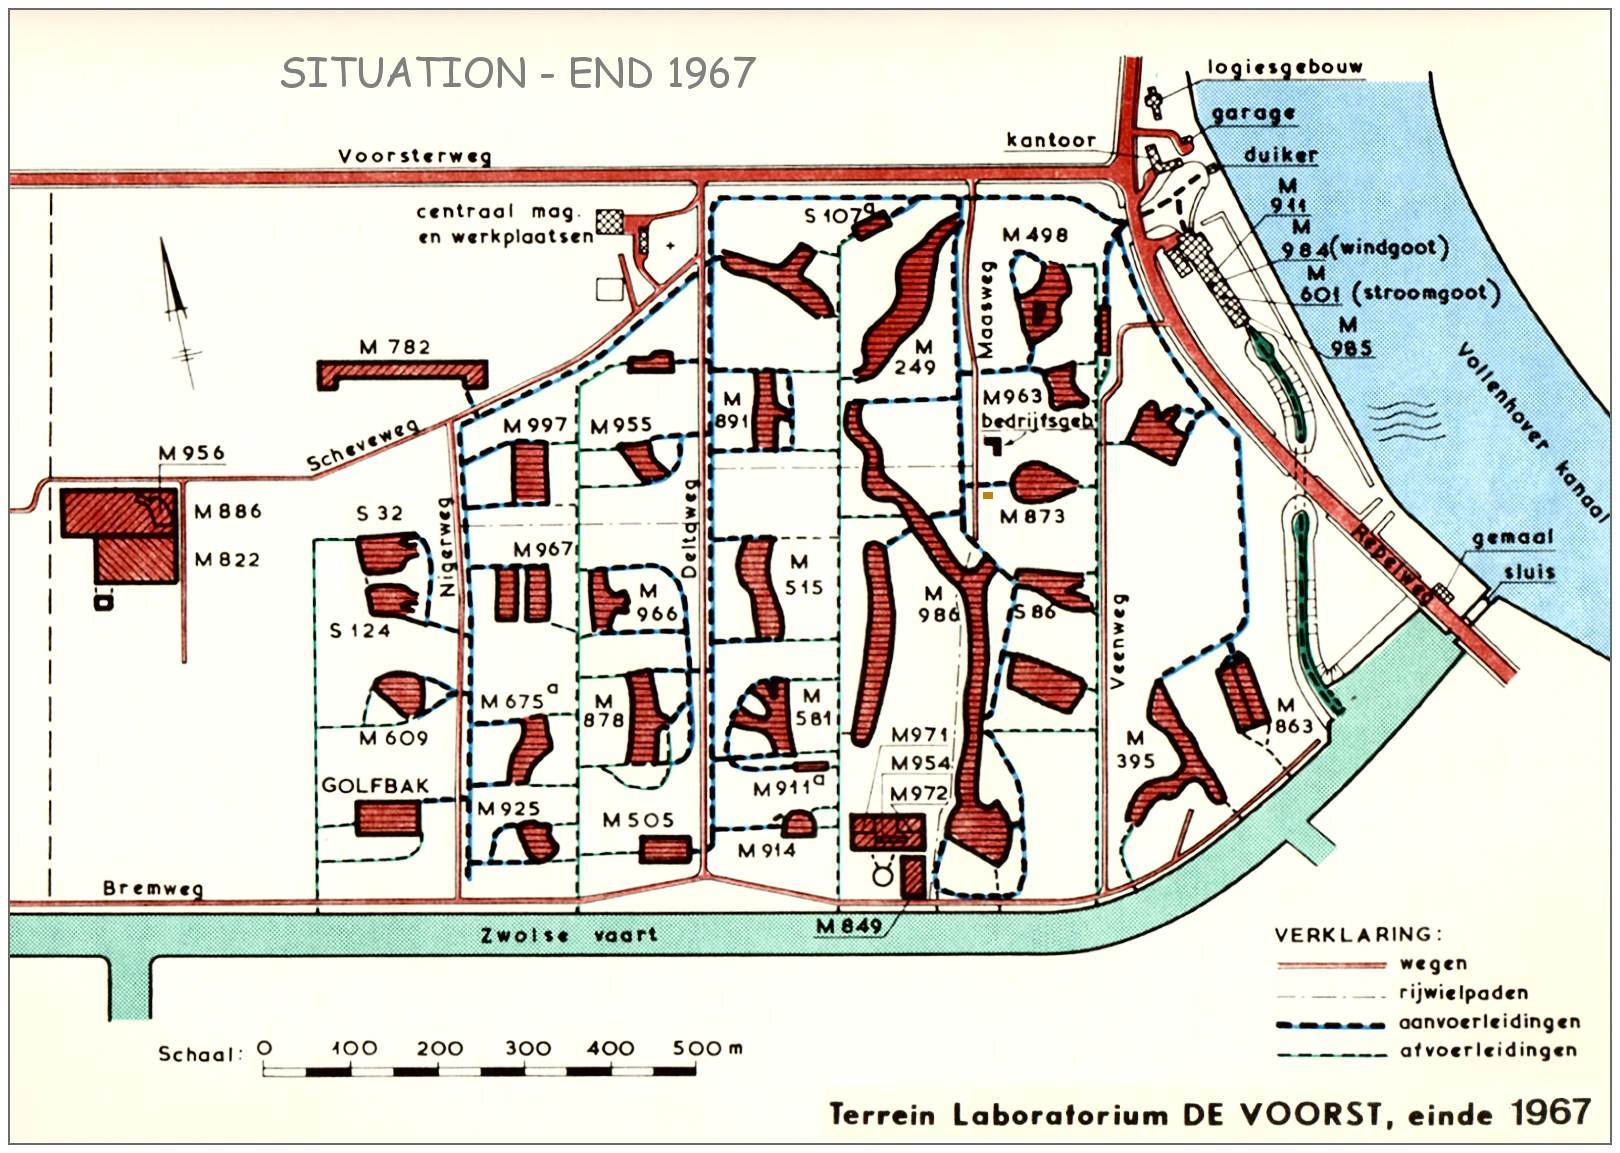 Terrain - Terrein Waterloopkundig Laboratorium - Modelplaatsen - situation end of 1967